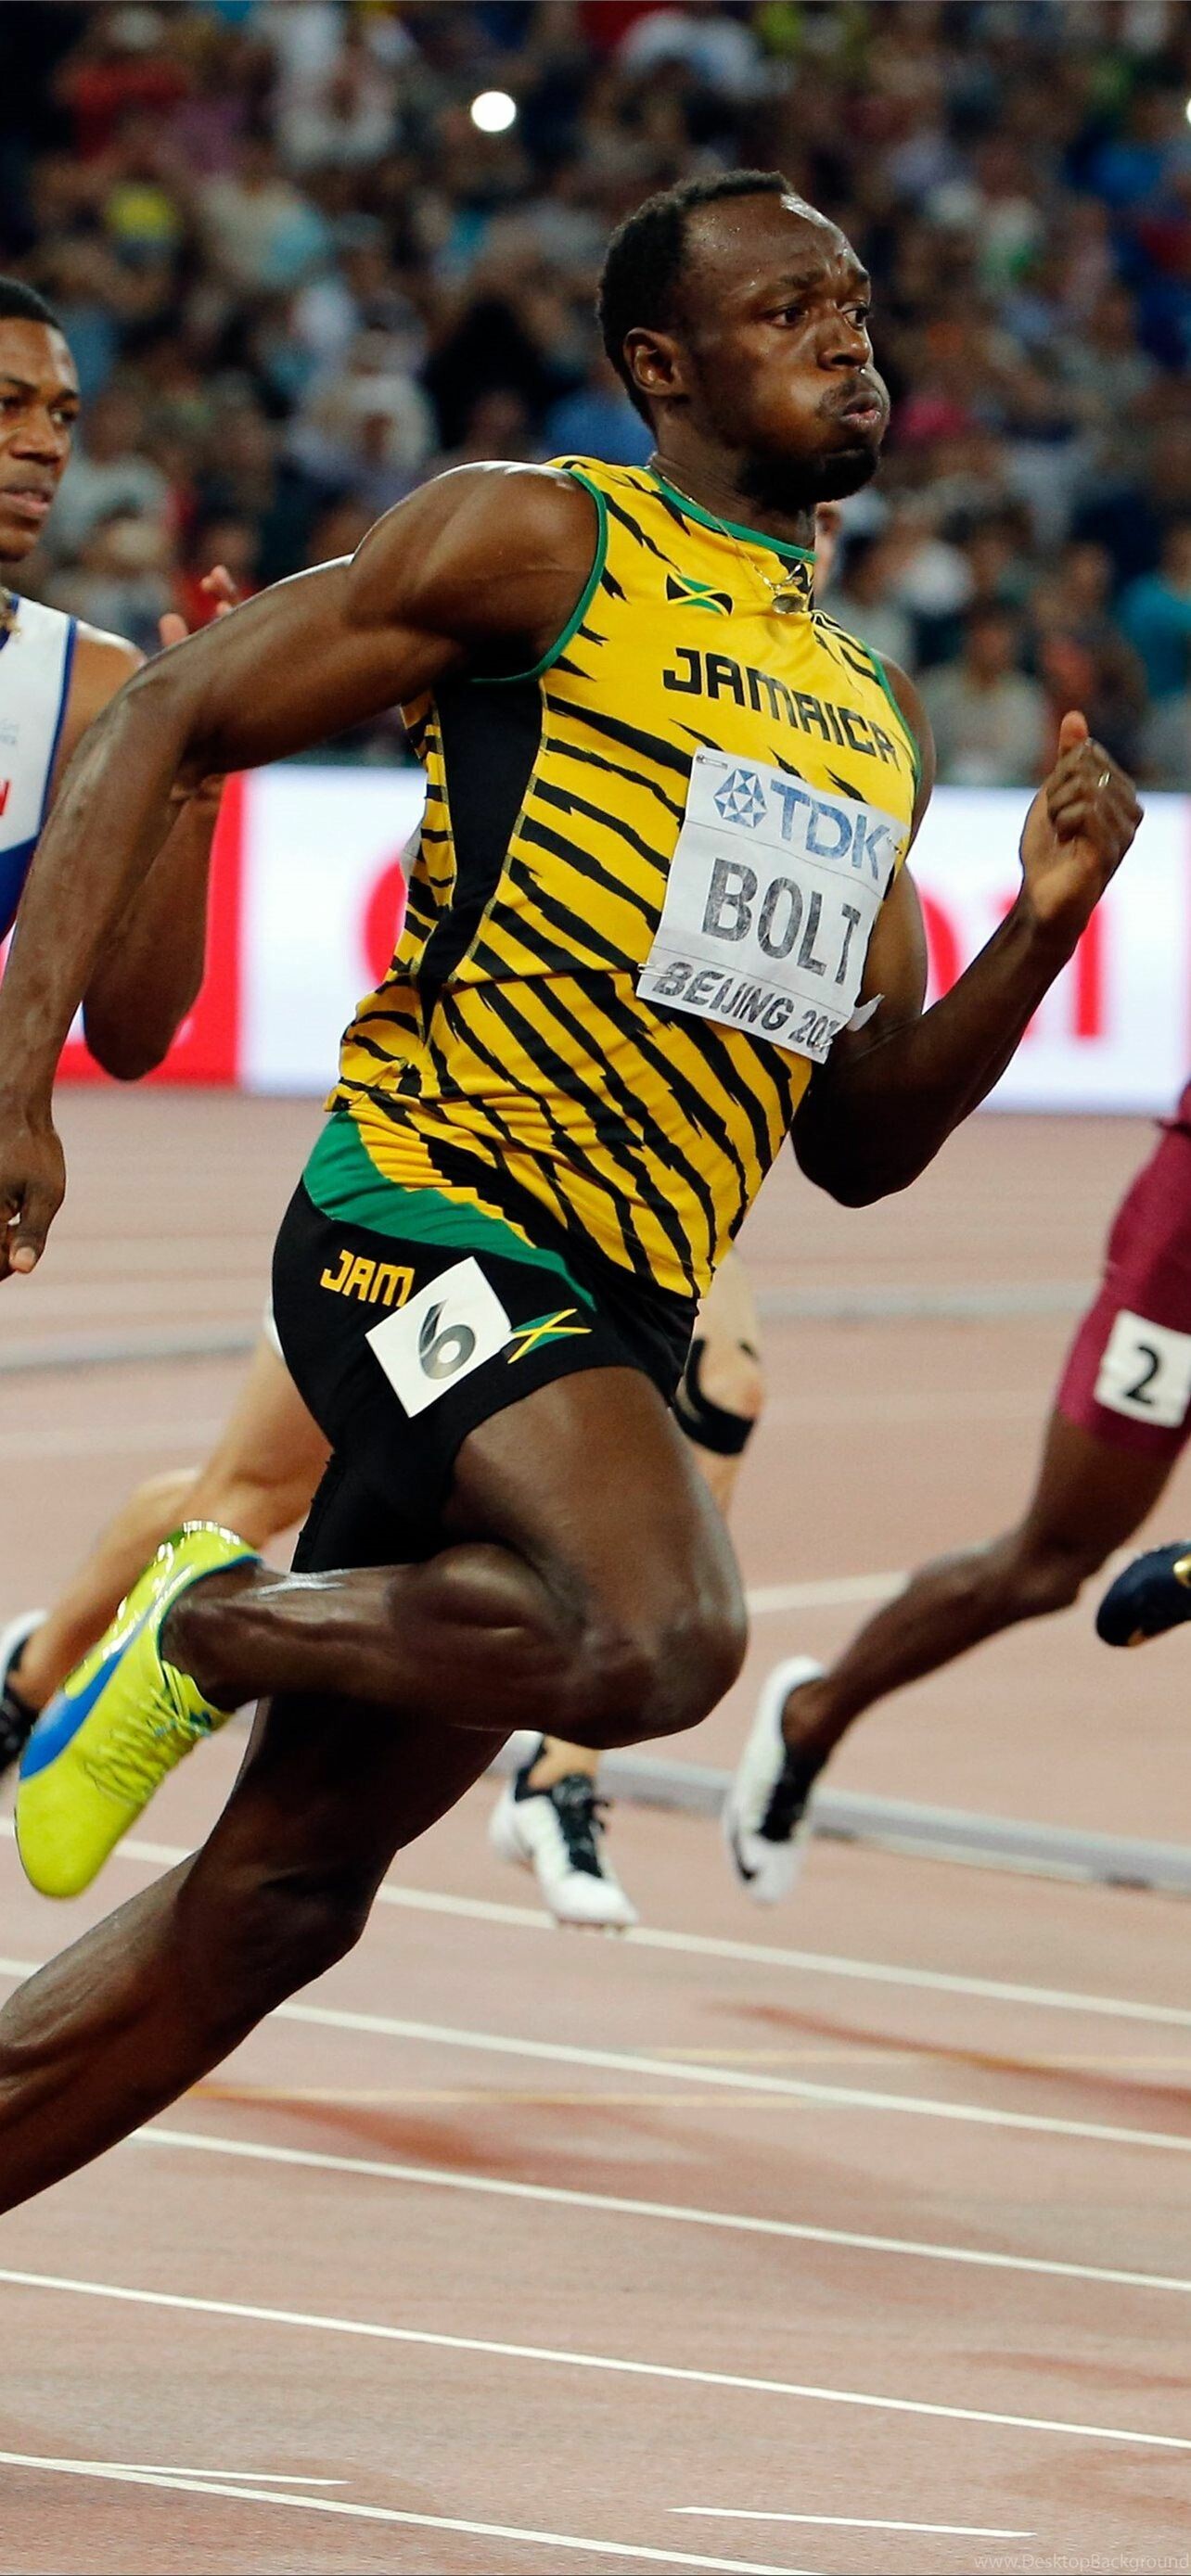 Usain Bolt, Best iPhone HD wallpapers, Sprinting sensation, World-class runner, 1290x2780 HD Phone